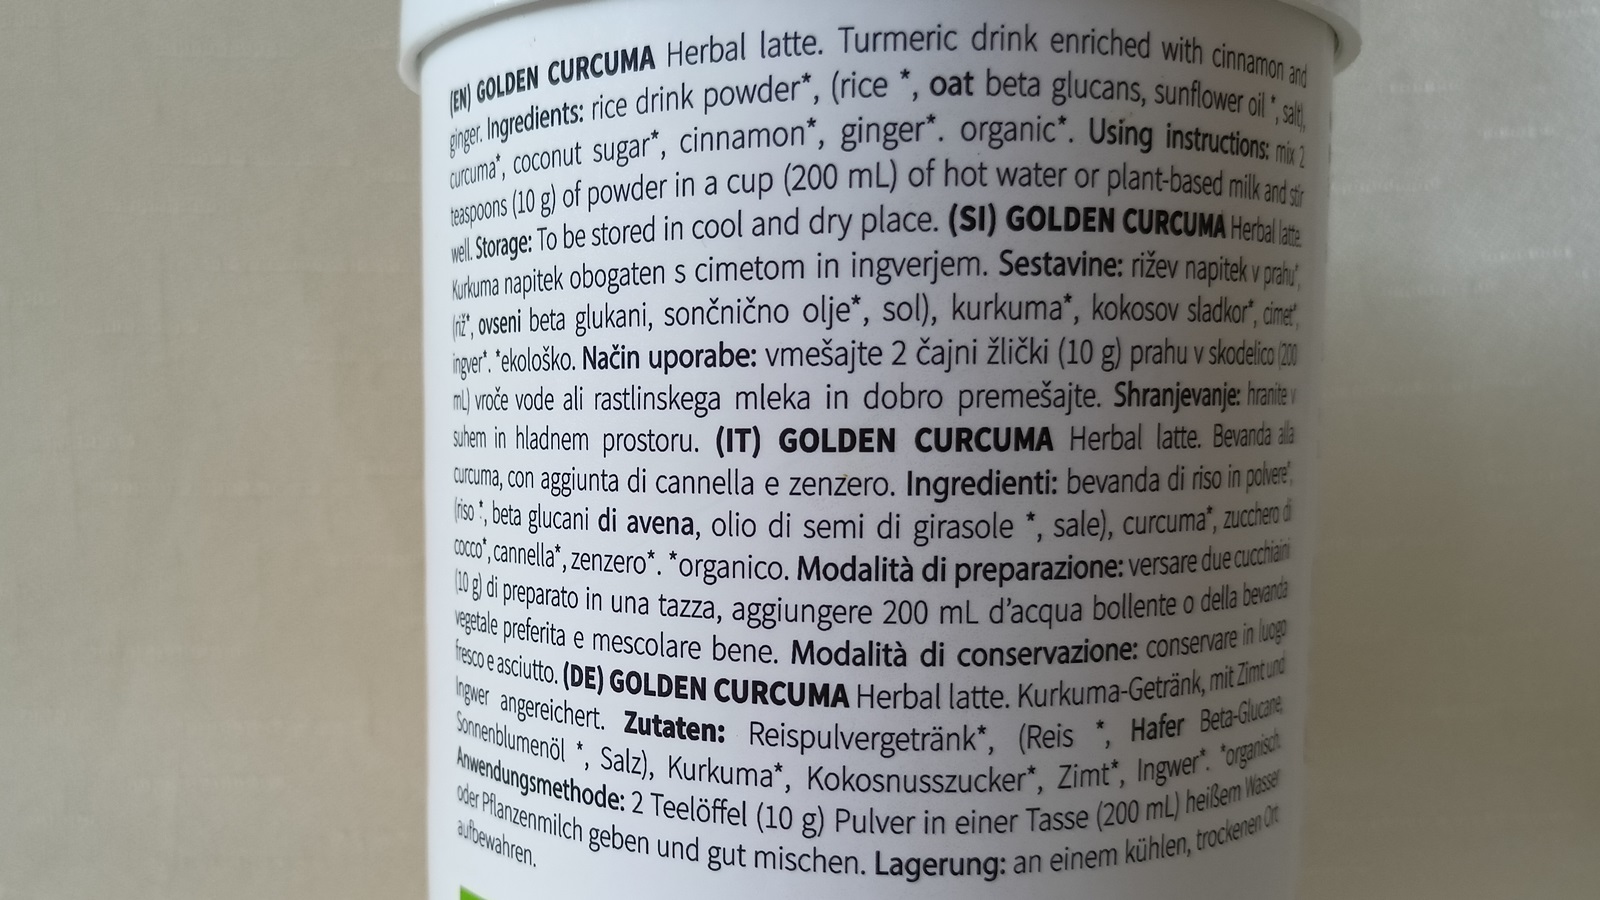 Recenze: Vyzkoušeli jsme Golden Curcuma Herbal Latté od Nature’s Finest